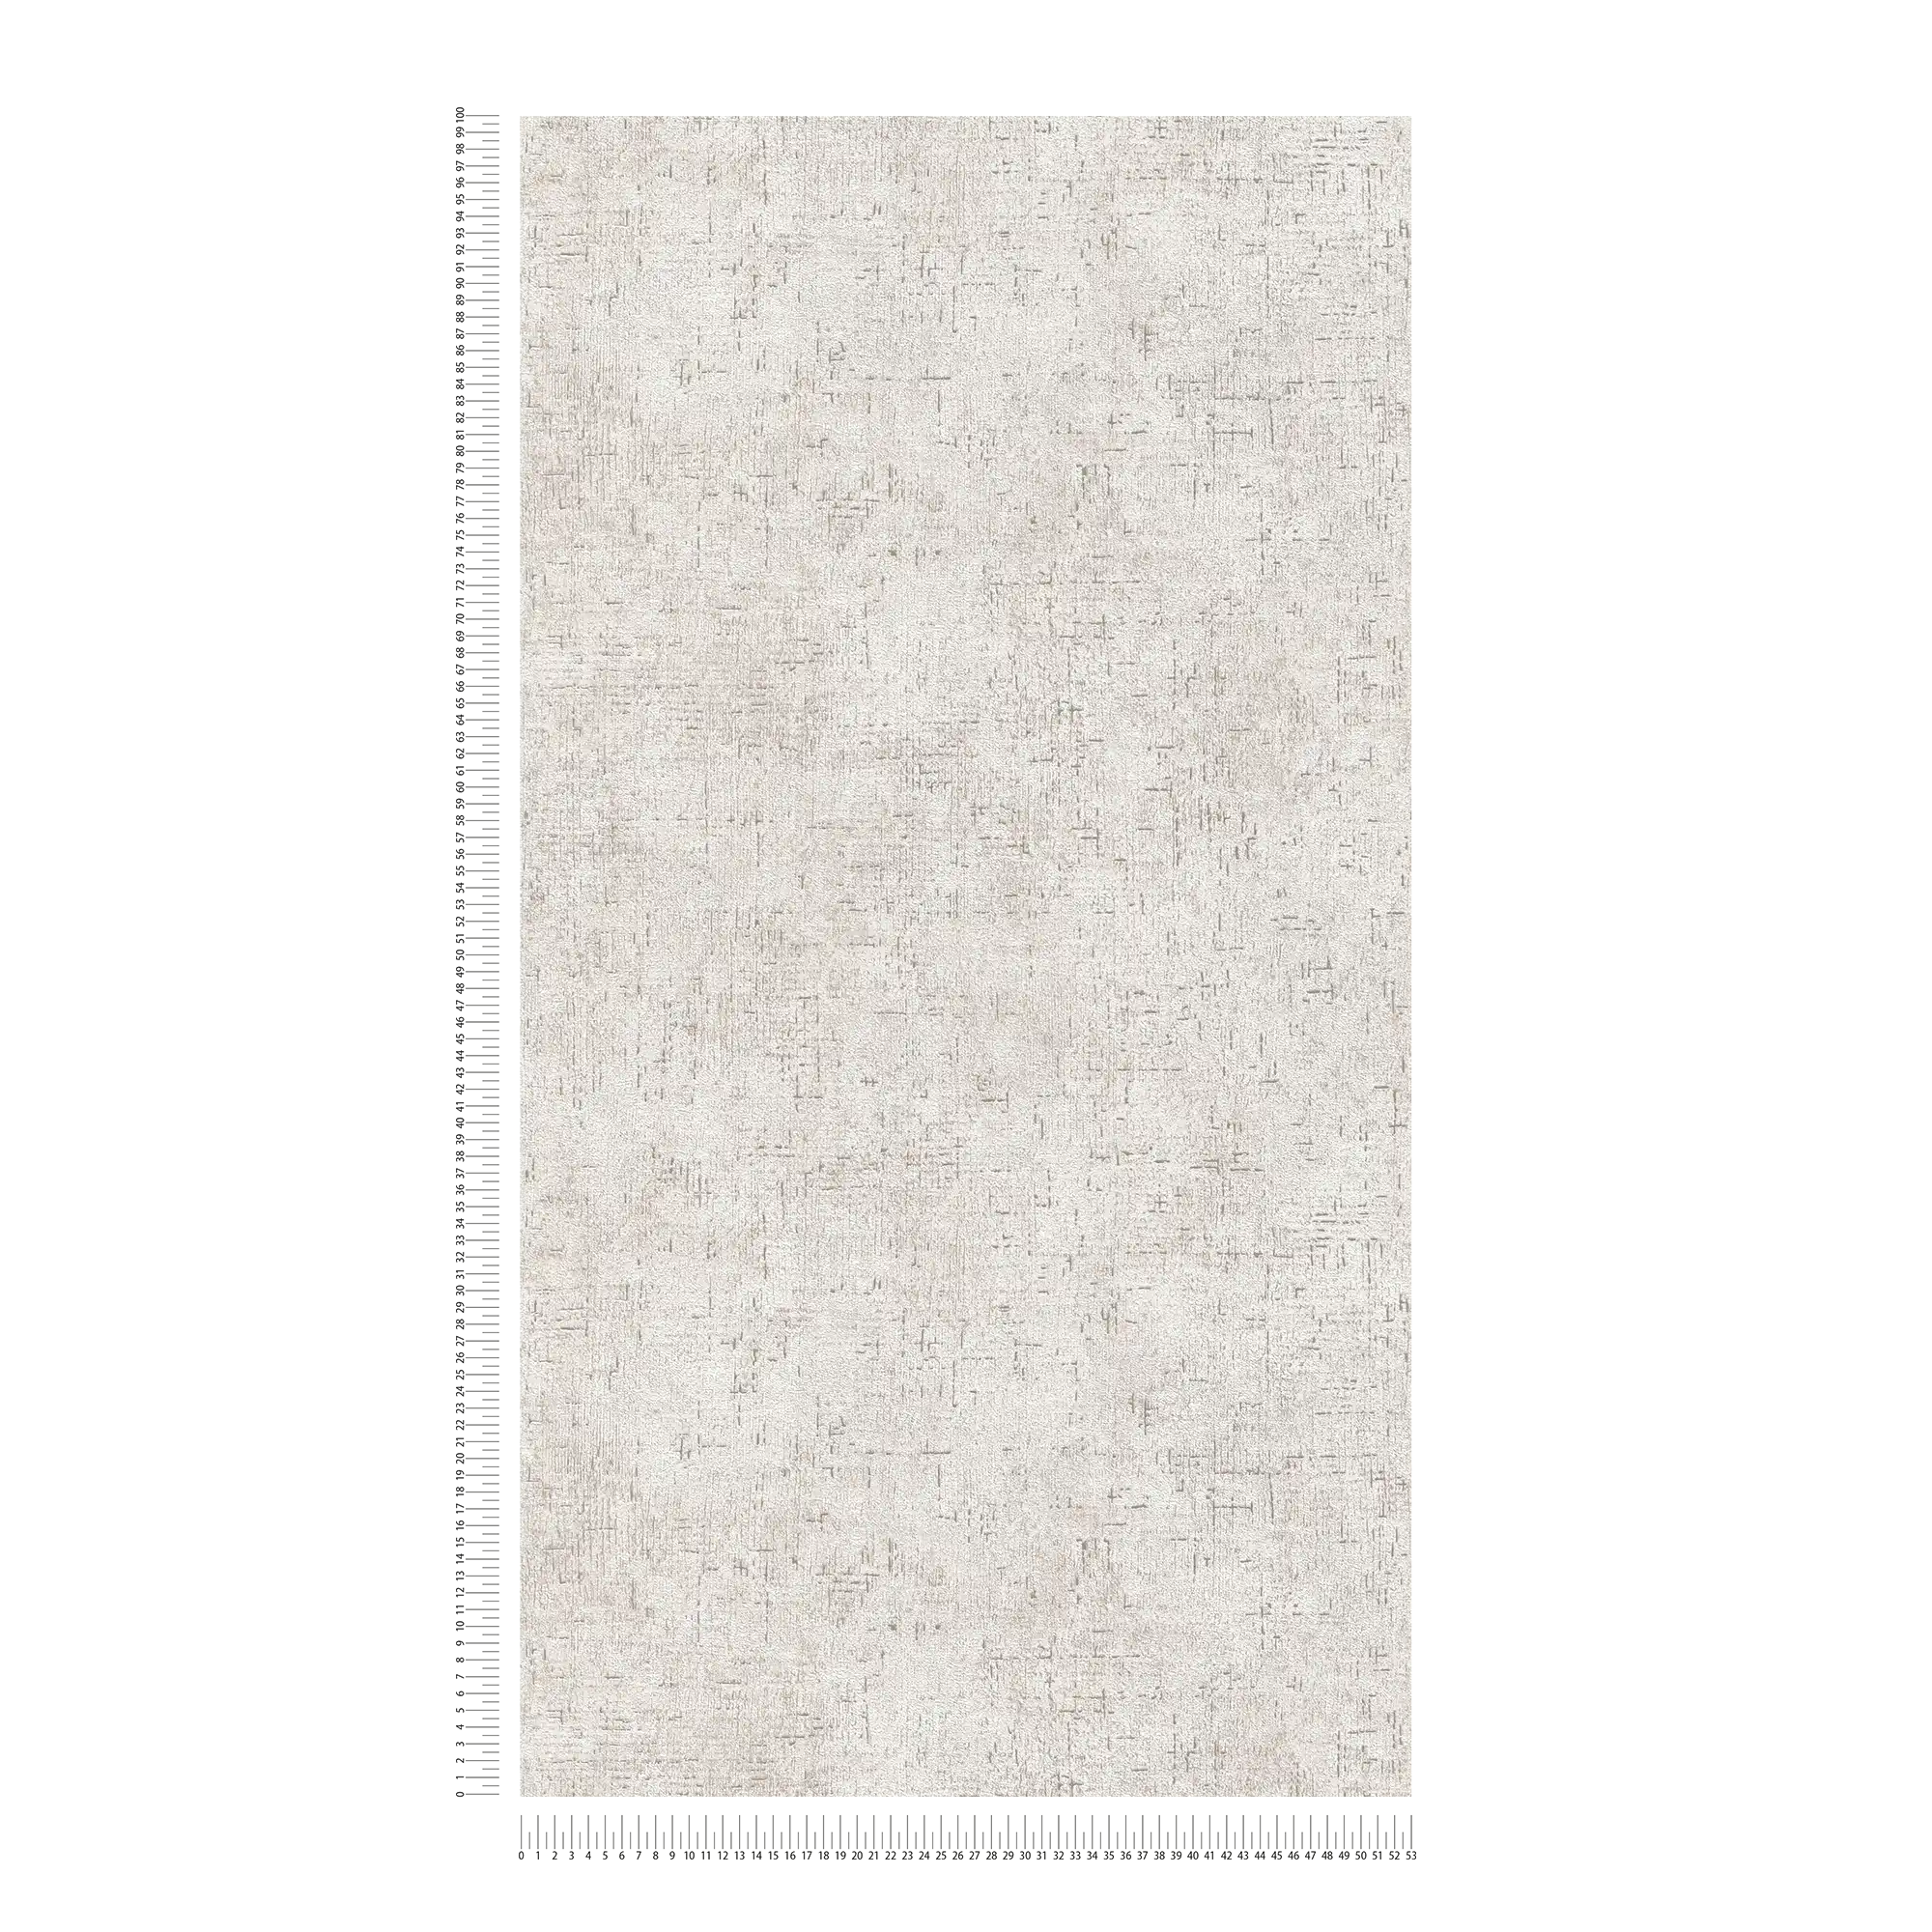             papier peint en papier intissé rustique structure crépi - beige, or, brillant
        